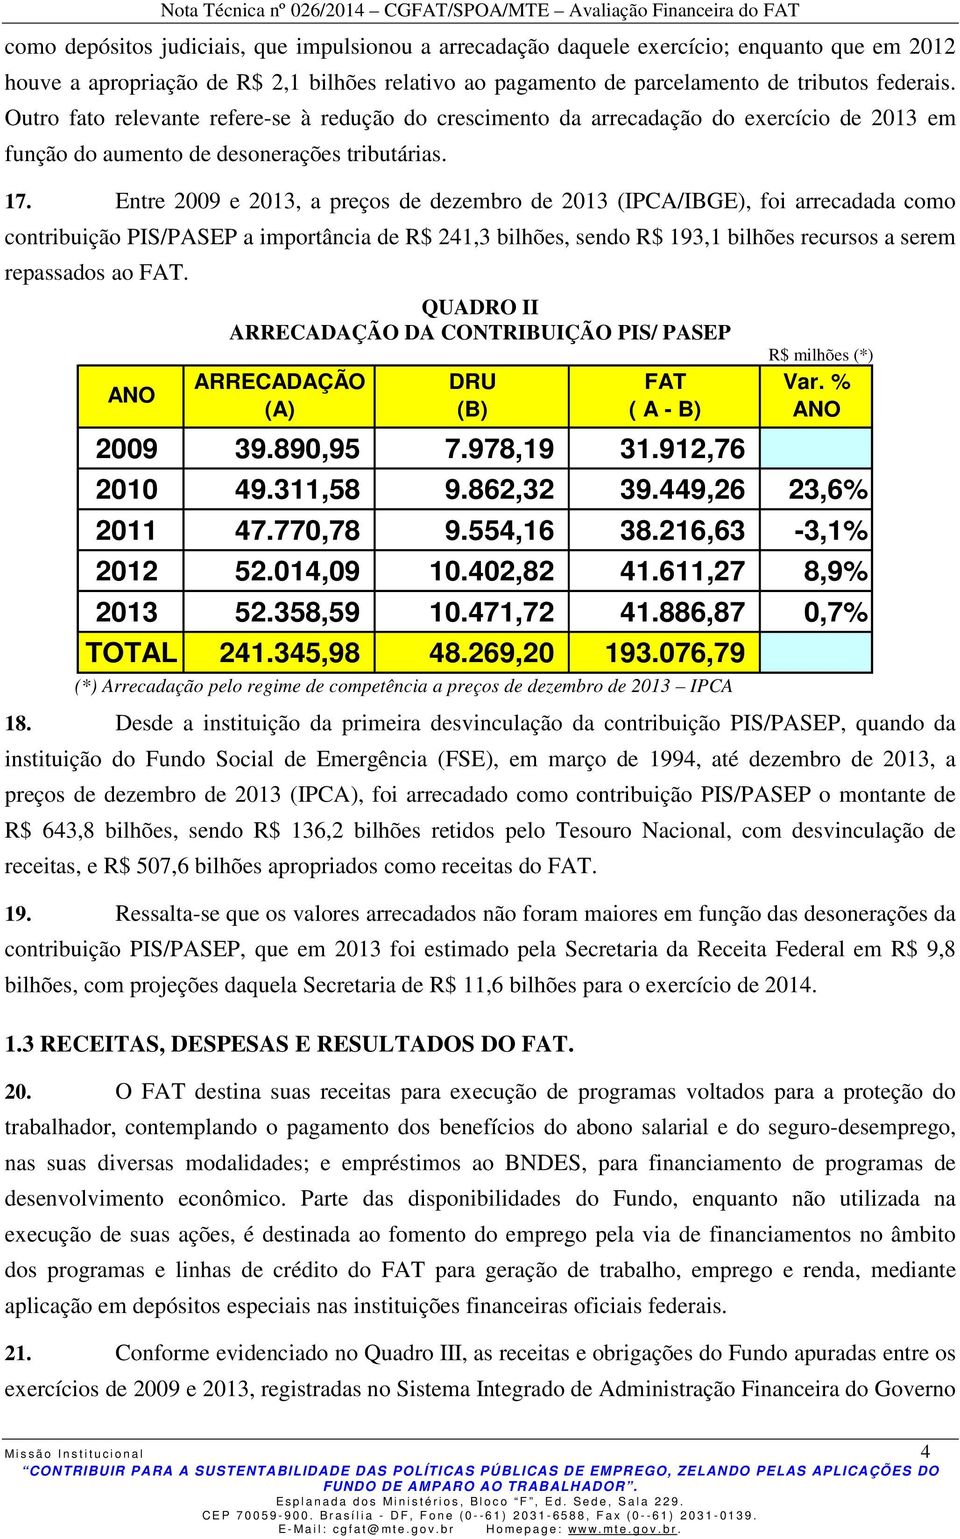 Entre 2009 e 2013, a preços de dezembro de 2013 (IPCA/IBGE), foi arrecadada como contribuição PIS/PASEP a importância de R$ 241,3 bilhões, sendo R$ 193,1 bilhões recursos a serem repassados ao FAT.